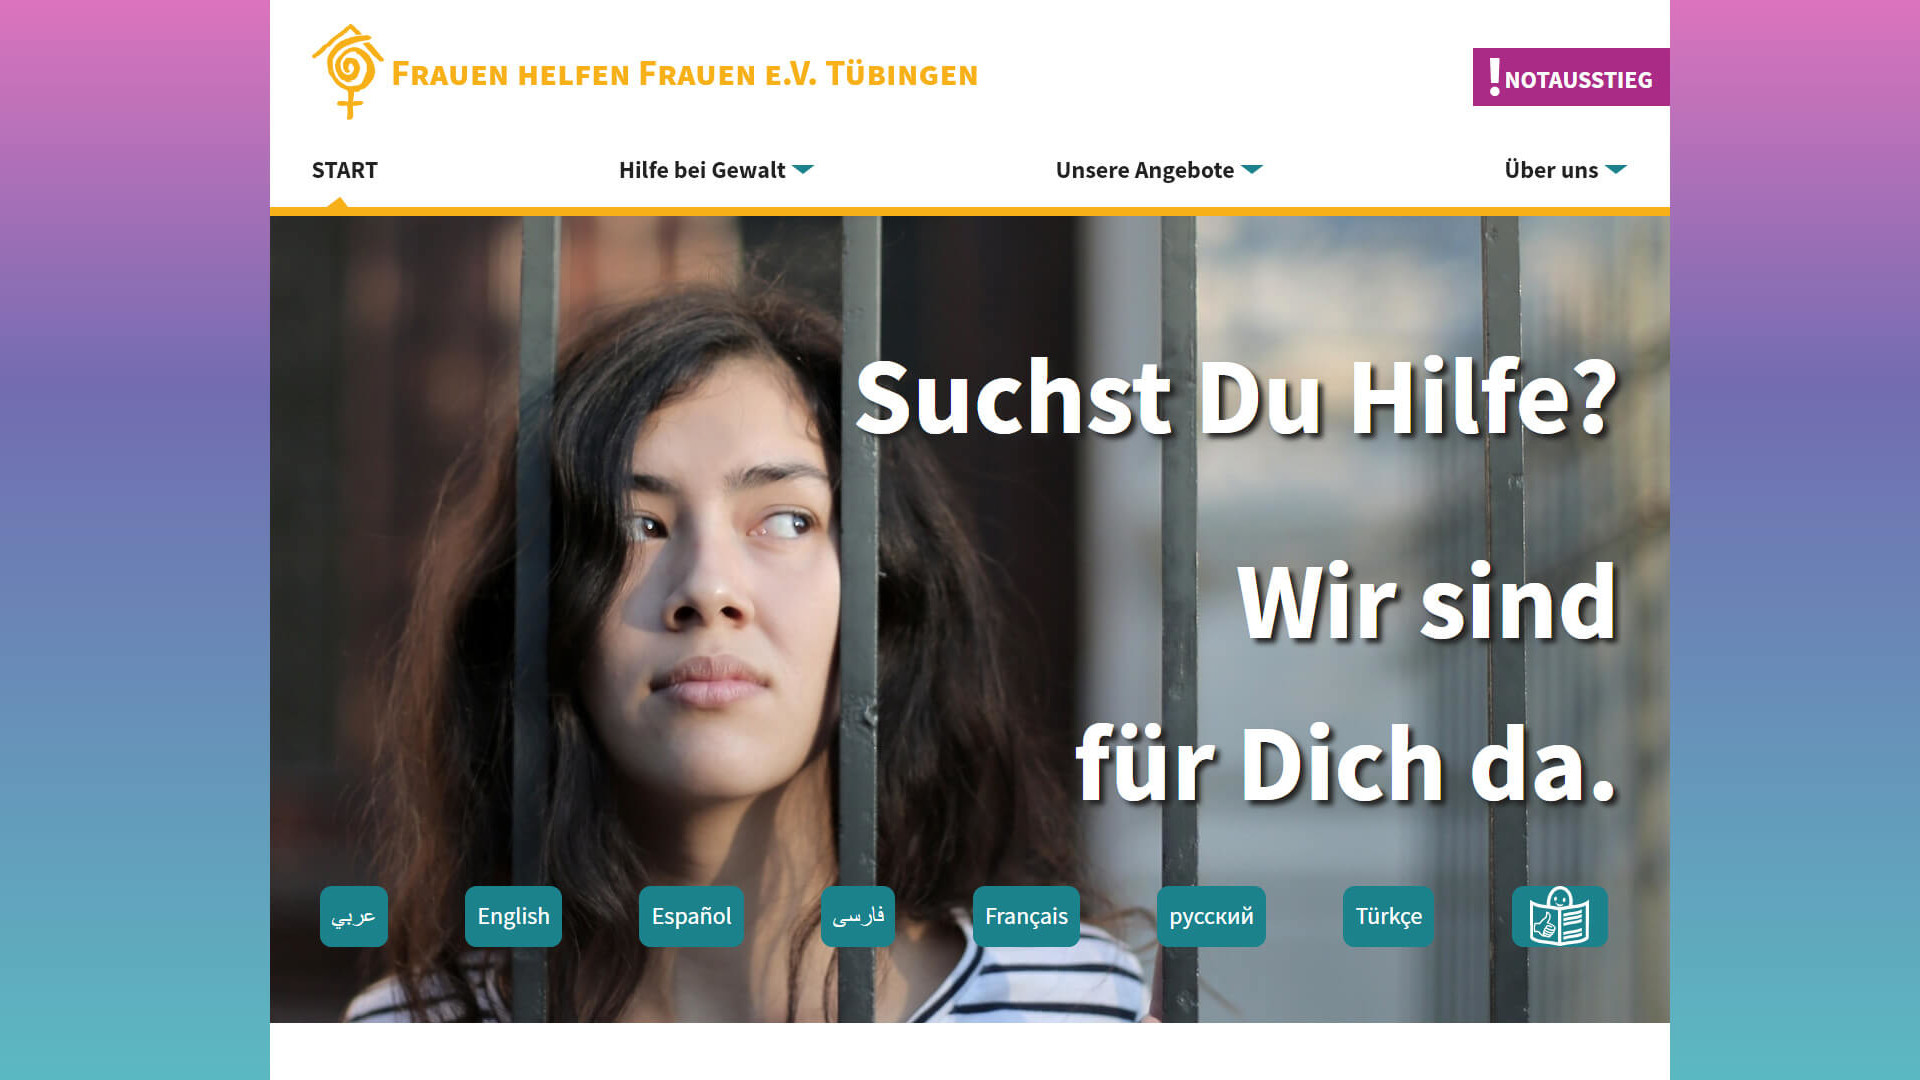 (c) Frauen-helfen-frauen-tuebingen.de